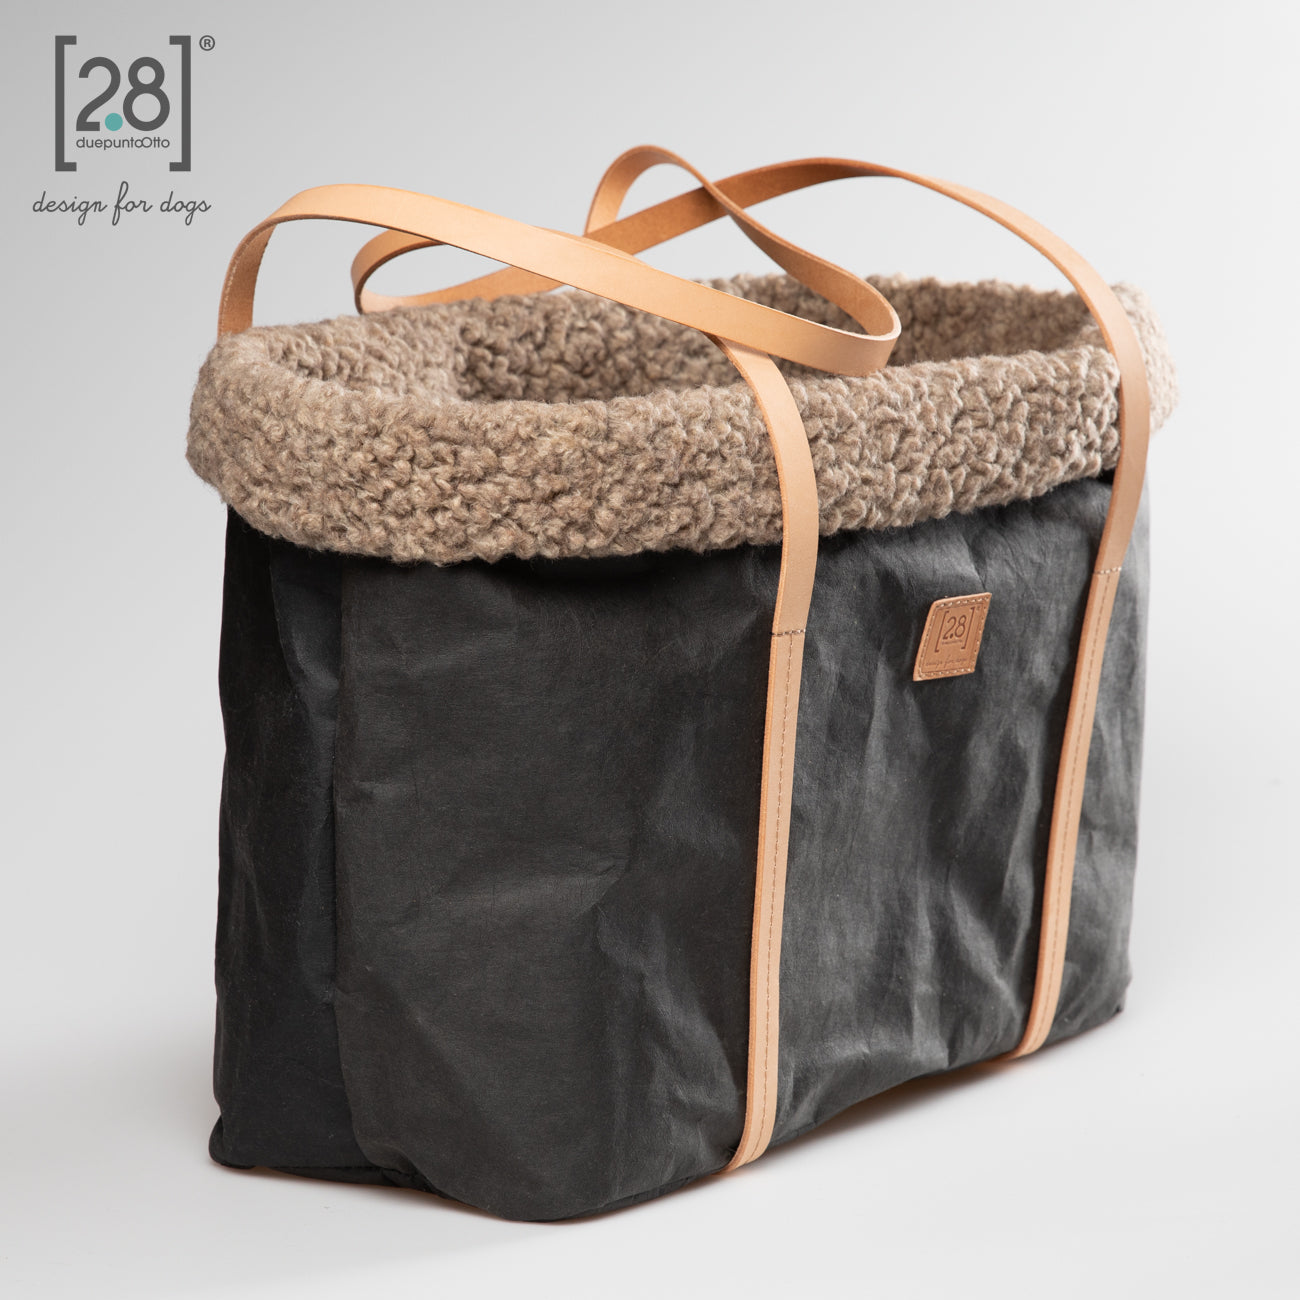 2.8 duepuntootto ANNIE Wax Paper Dog Bag Black Boucle Wool moderne Hundereisetasche